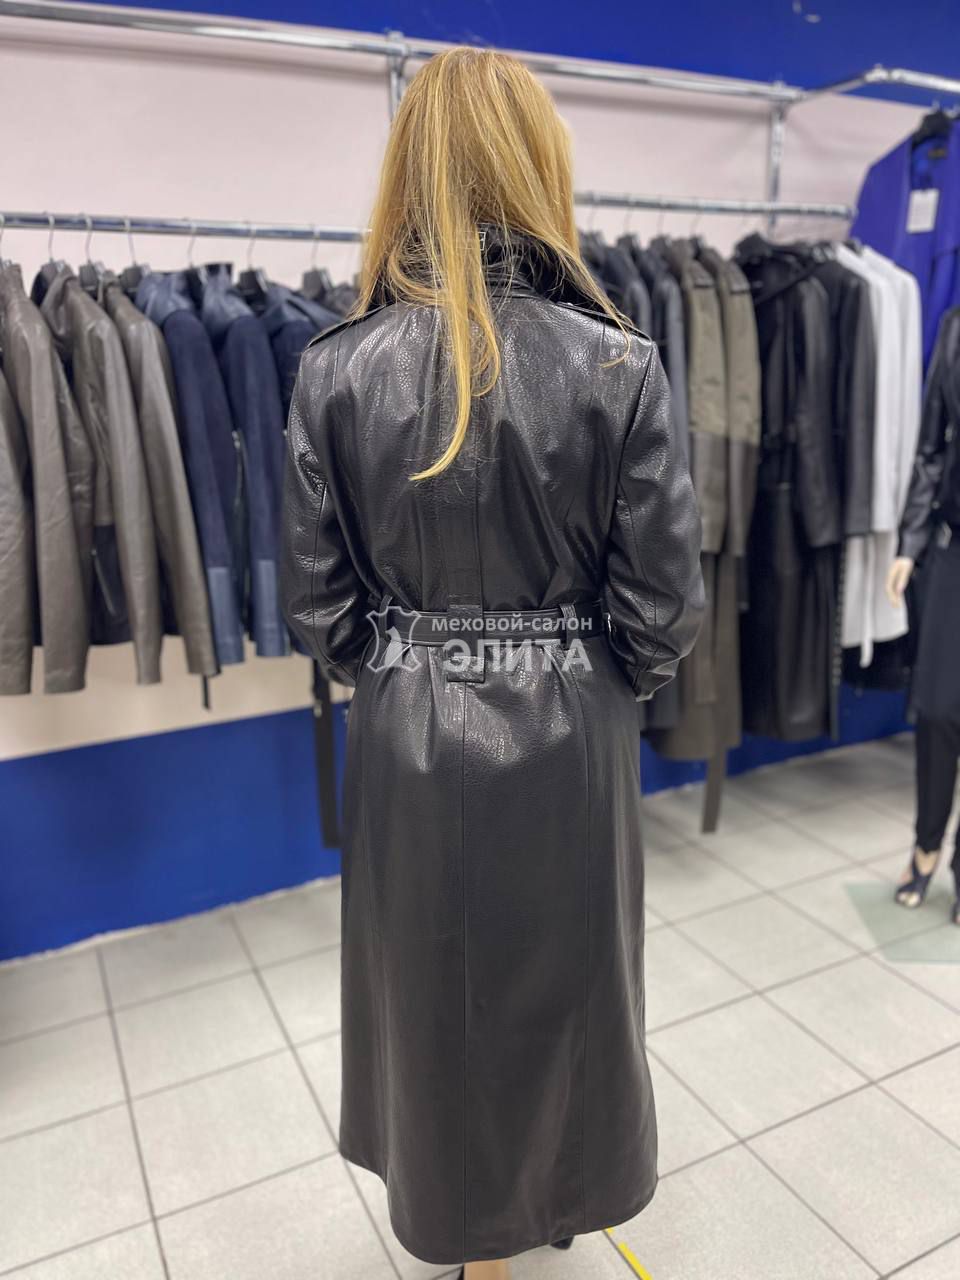 Кожаное пальто м-2758, р-р 46-54, цена 60000 рублей в интернет-магазине кожи и меха ЭЛИТА. Вид 2